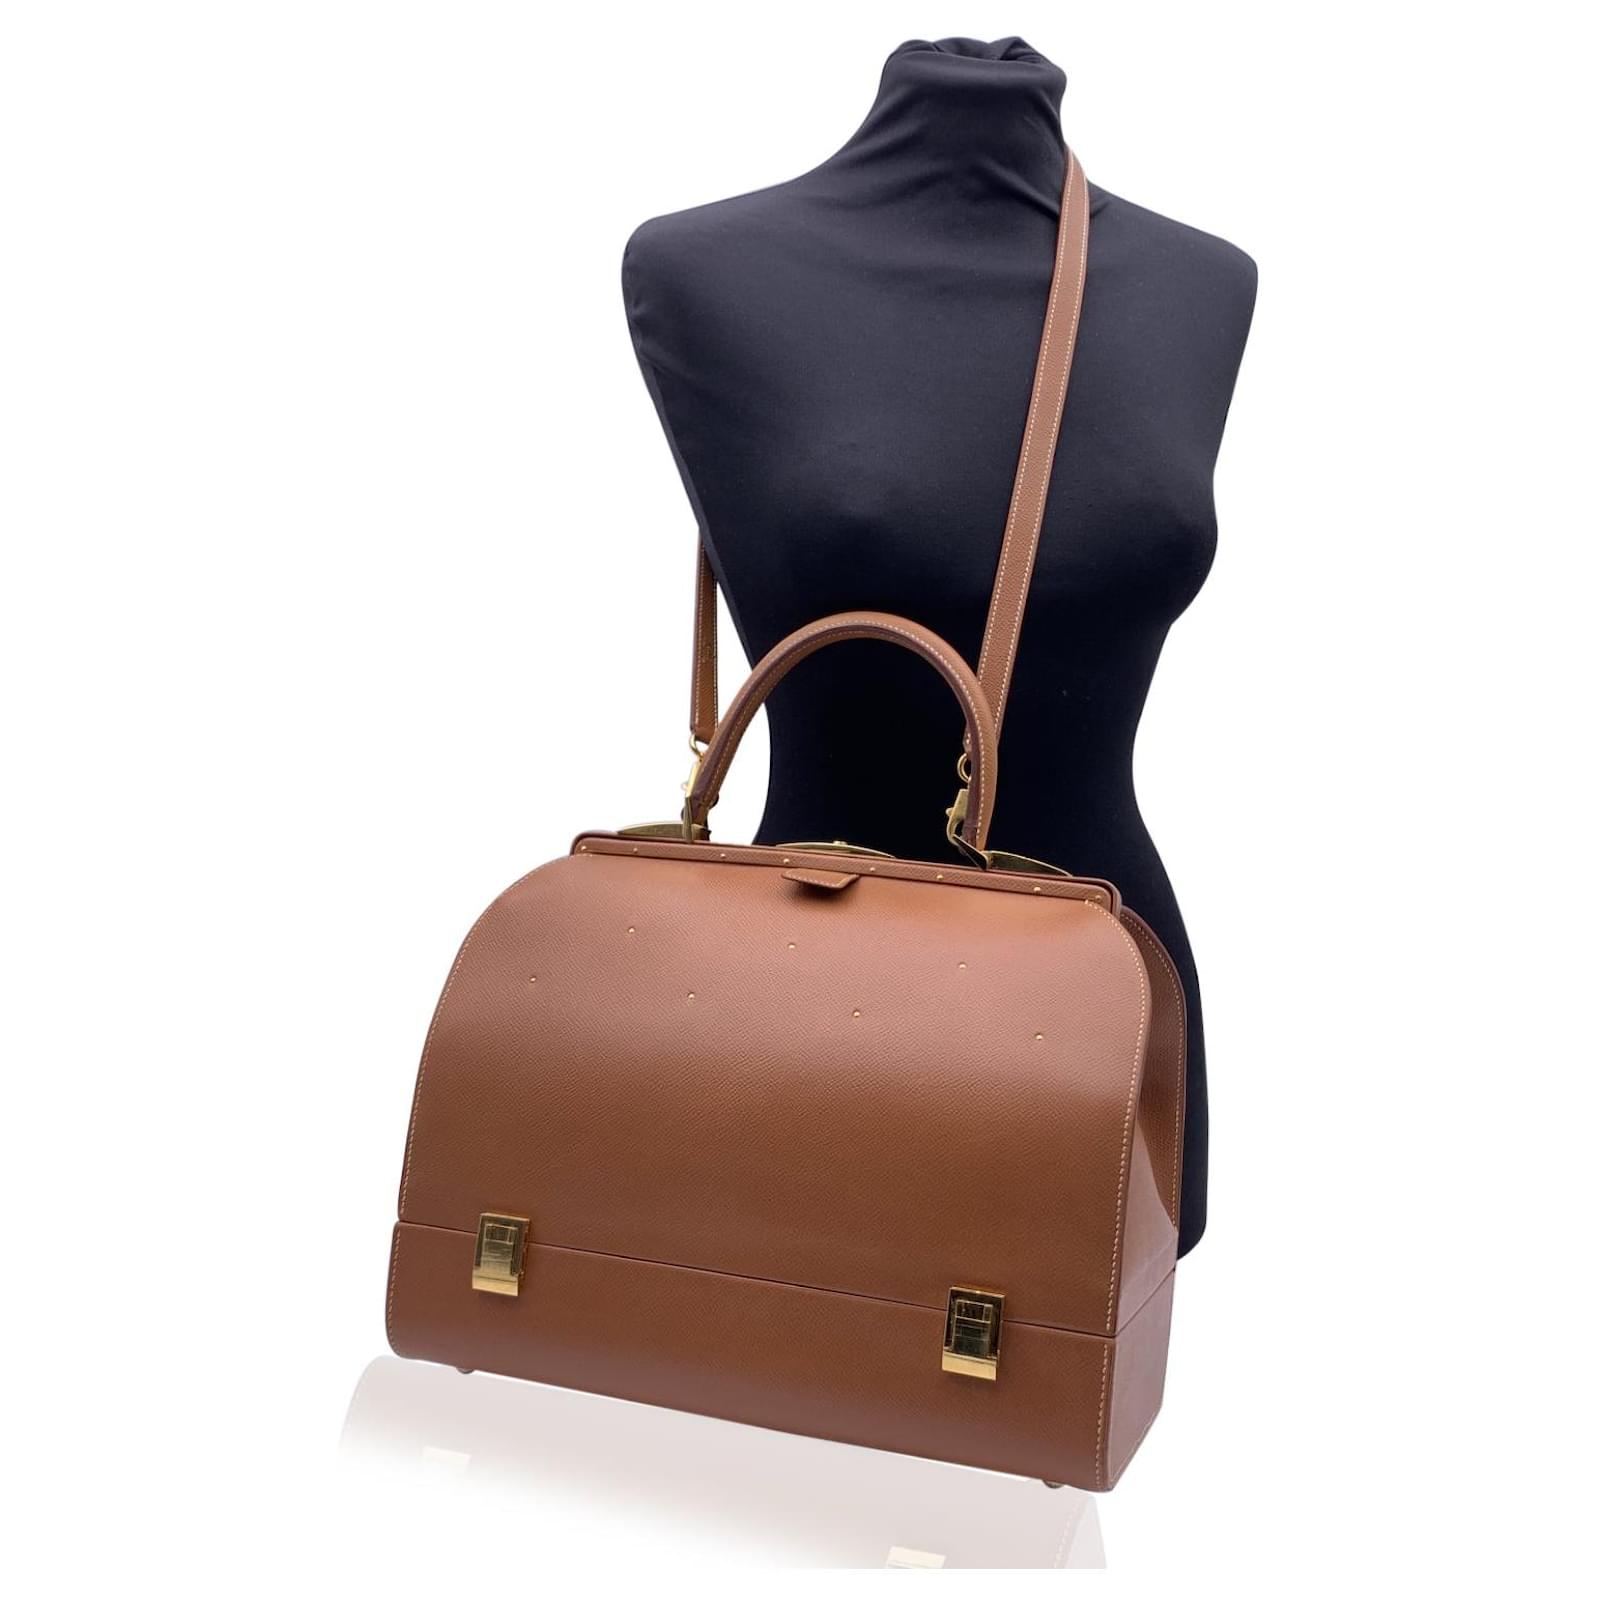 Vintage Hermes Mallette bag handbag brown